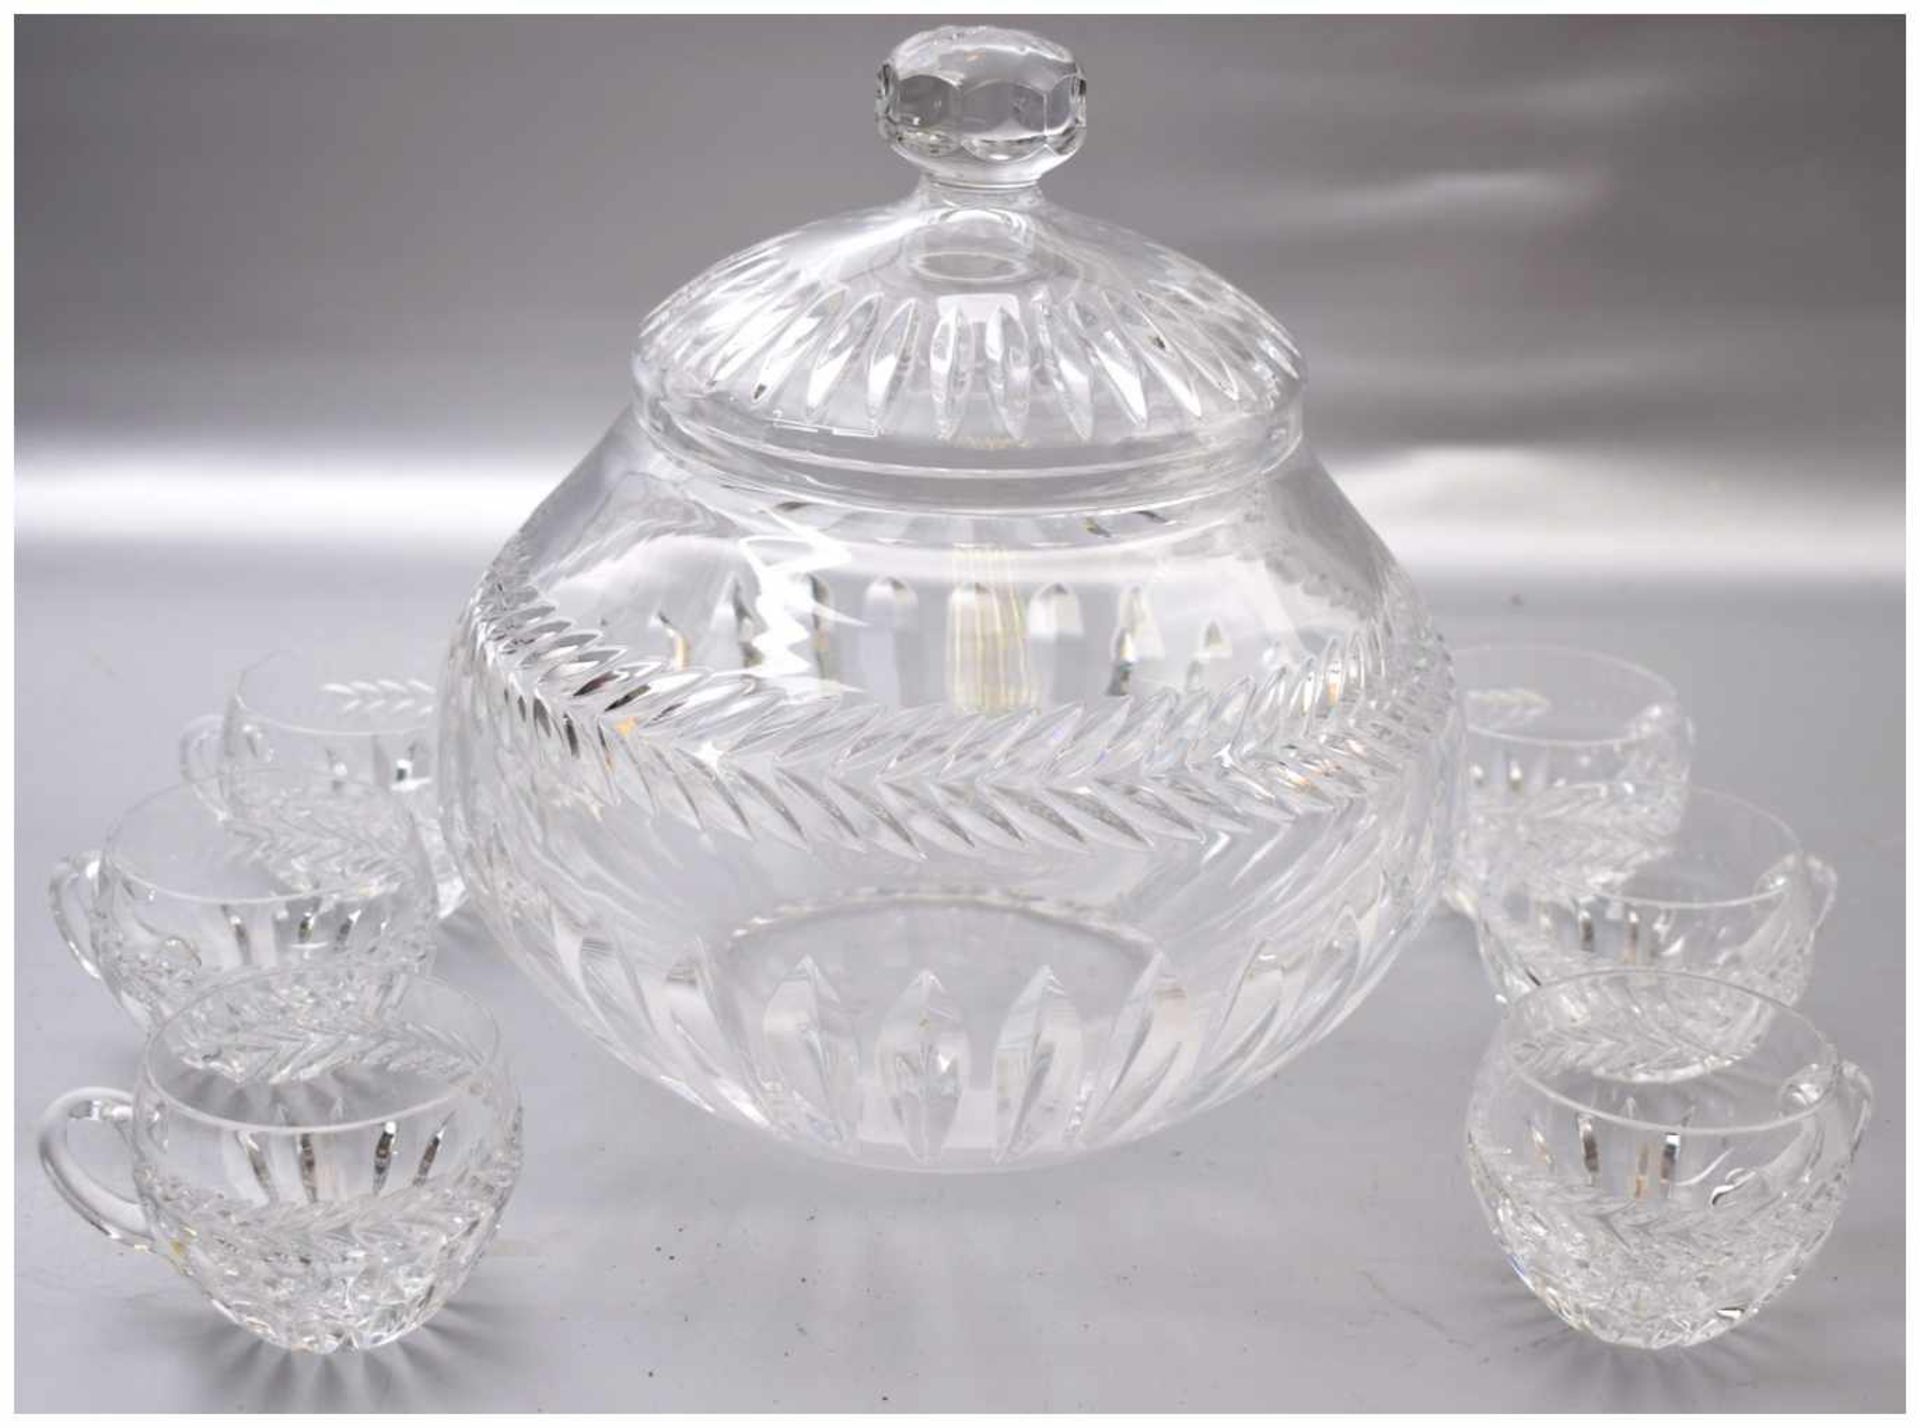 Bowle mit sechs Gläsern farbl. Glas, geschliffen verziert, leicht gebaucht, H 25 cm, Dm 24 cm